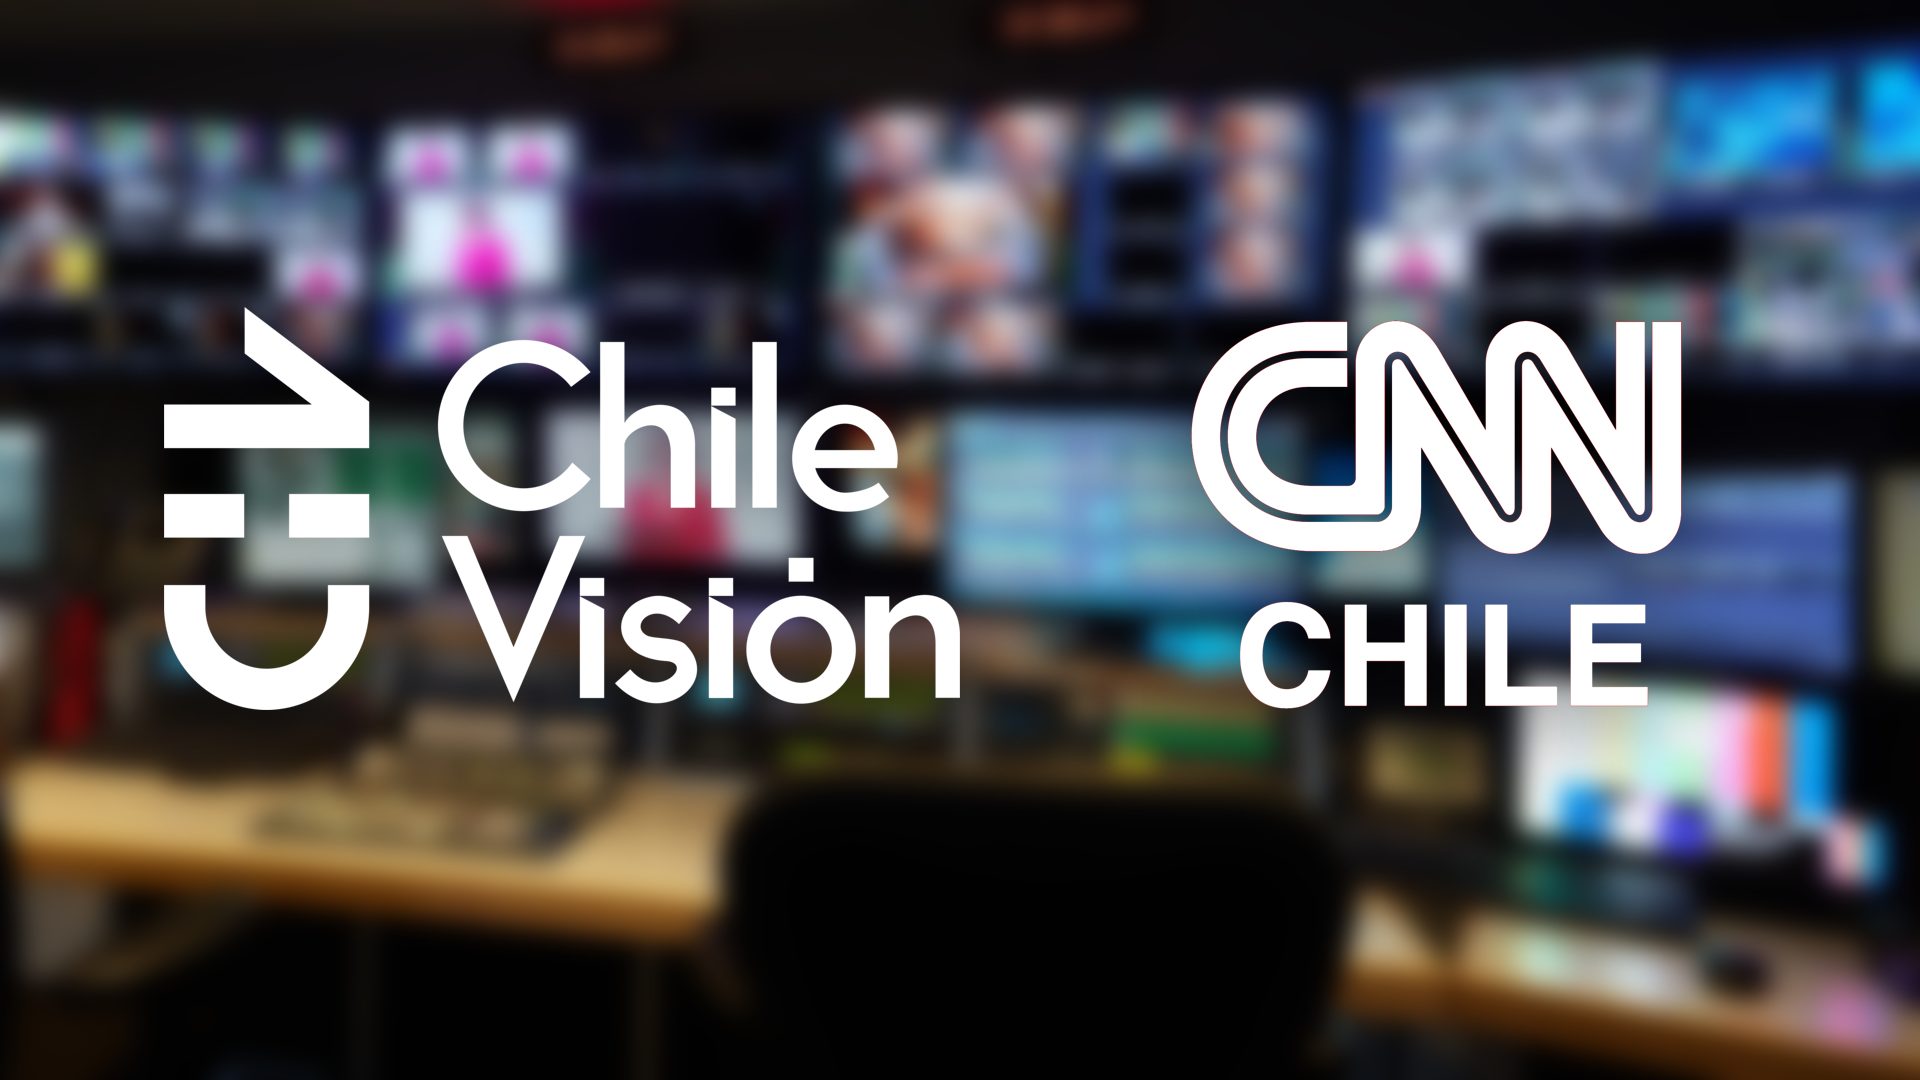 Chilevisión - CNN Chile